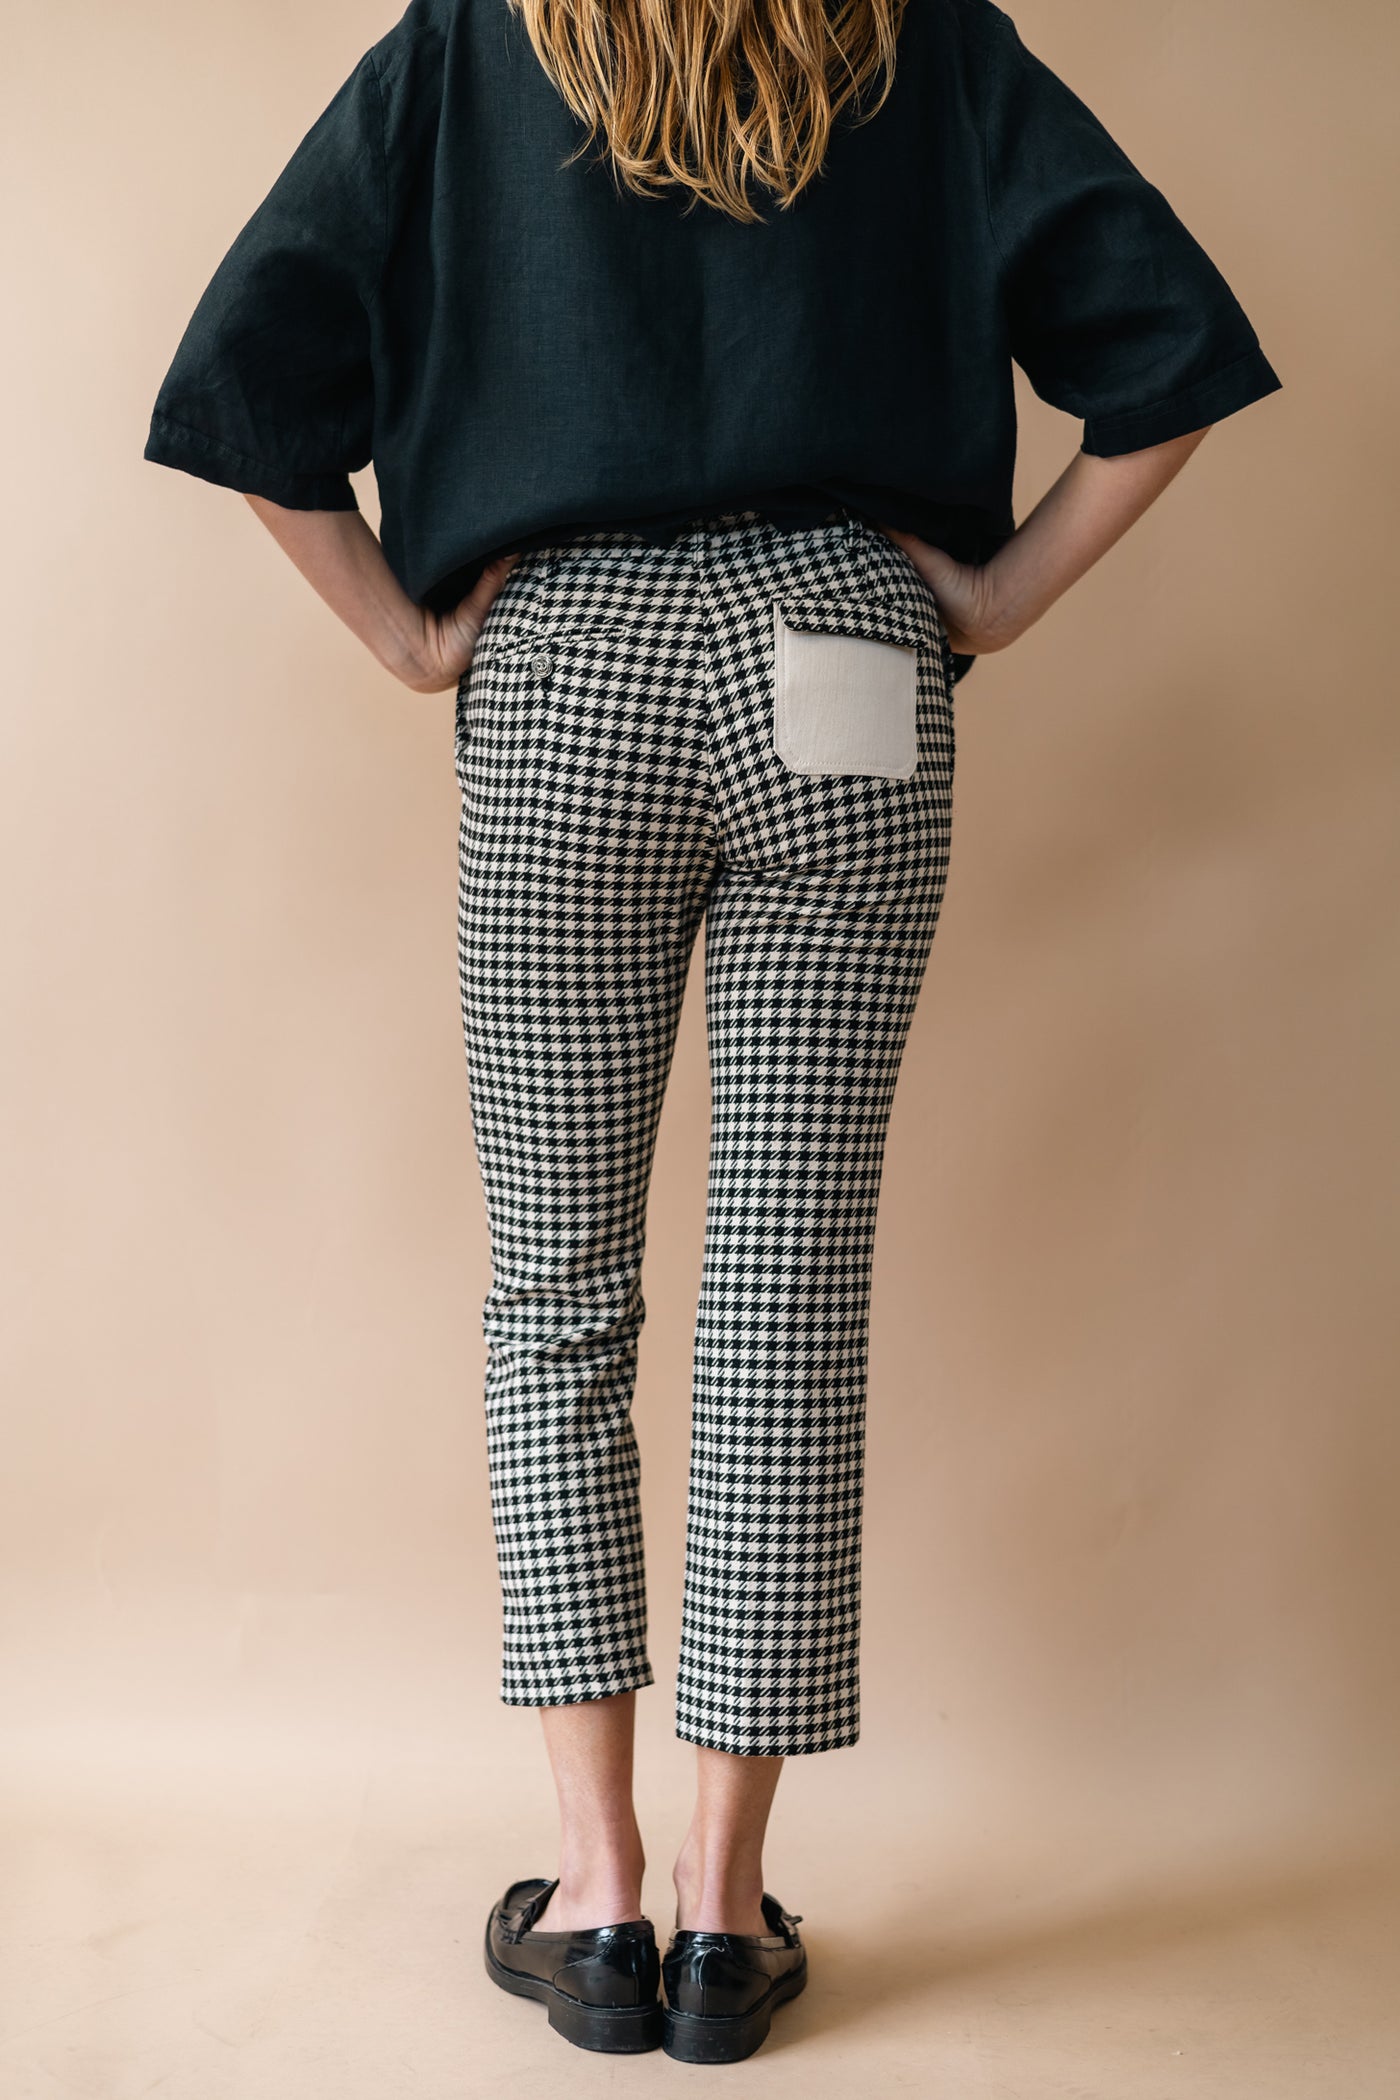 Pantalon - Pièce Unique N°590